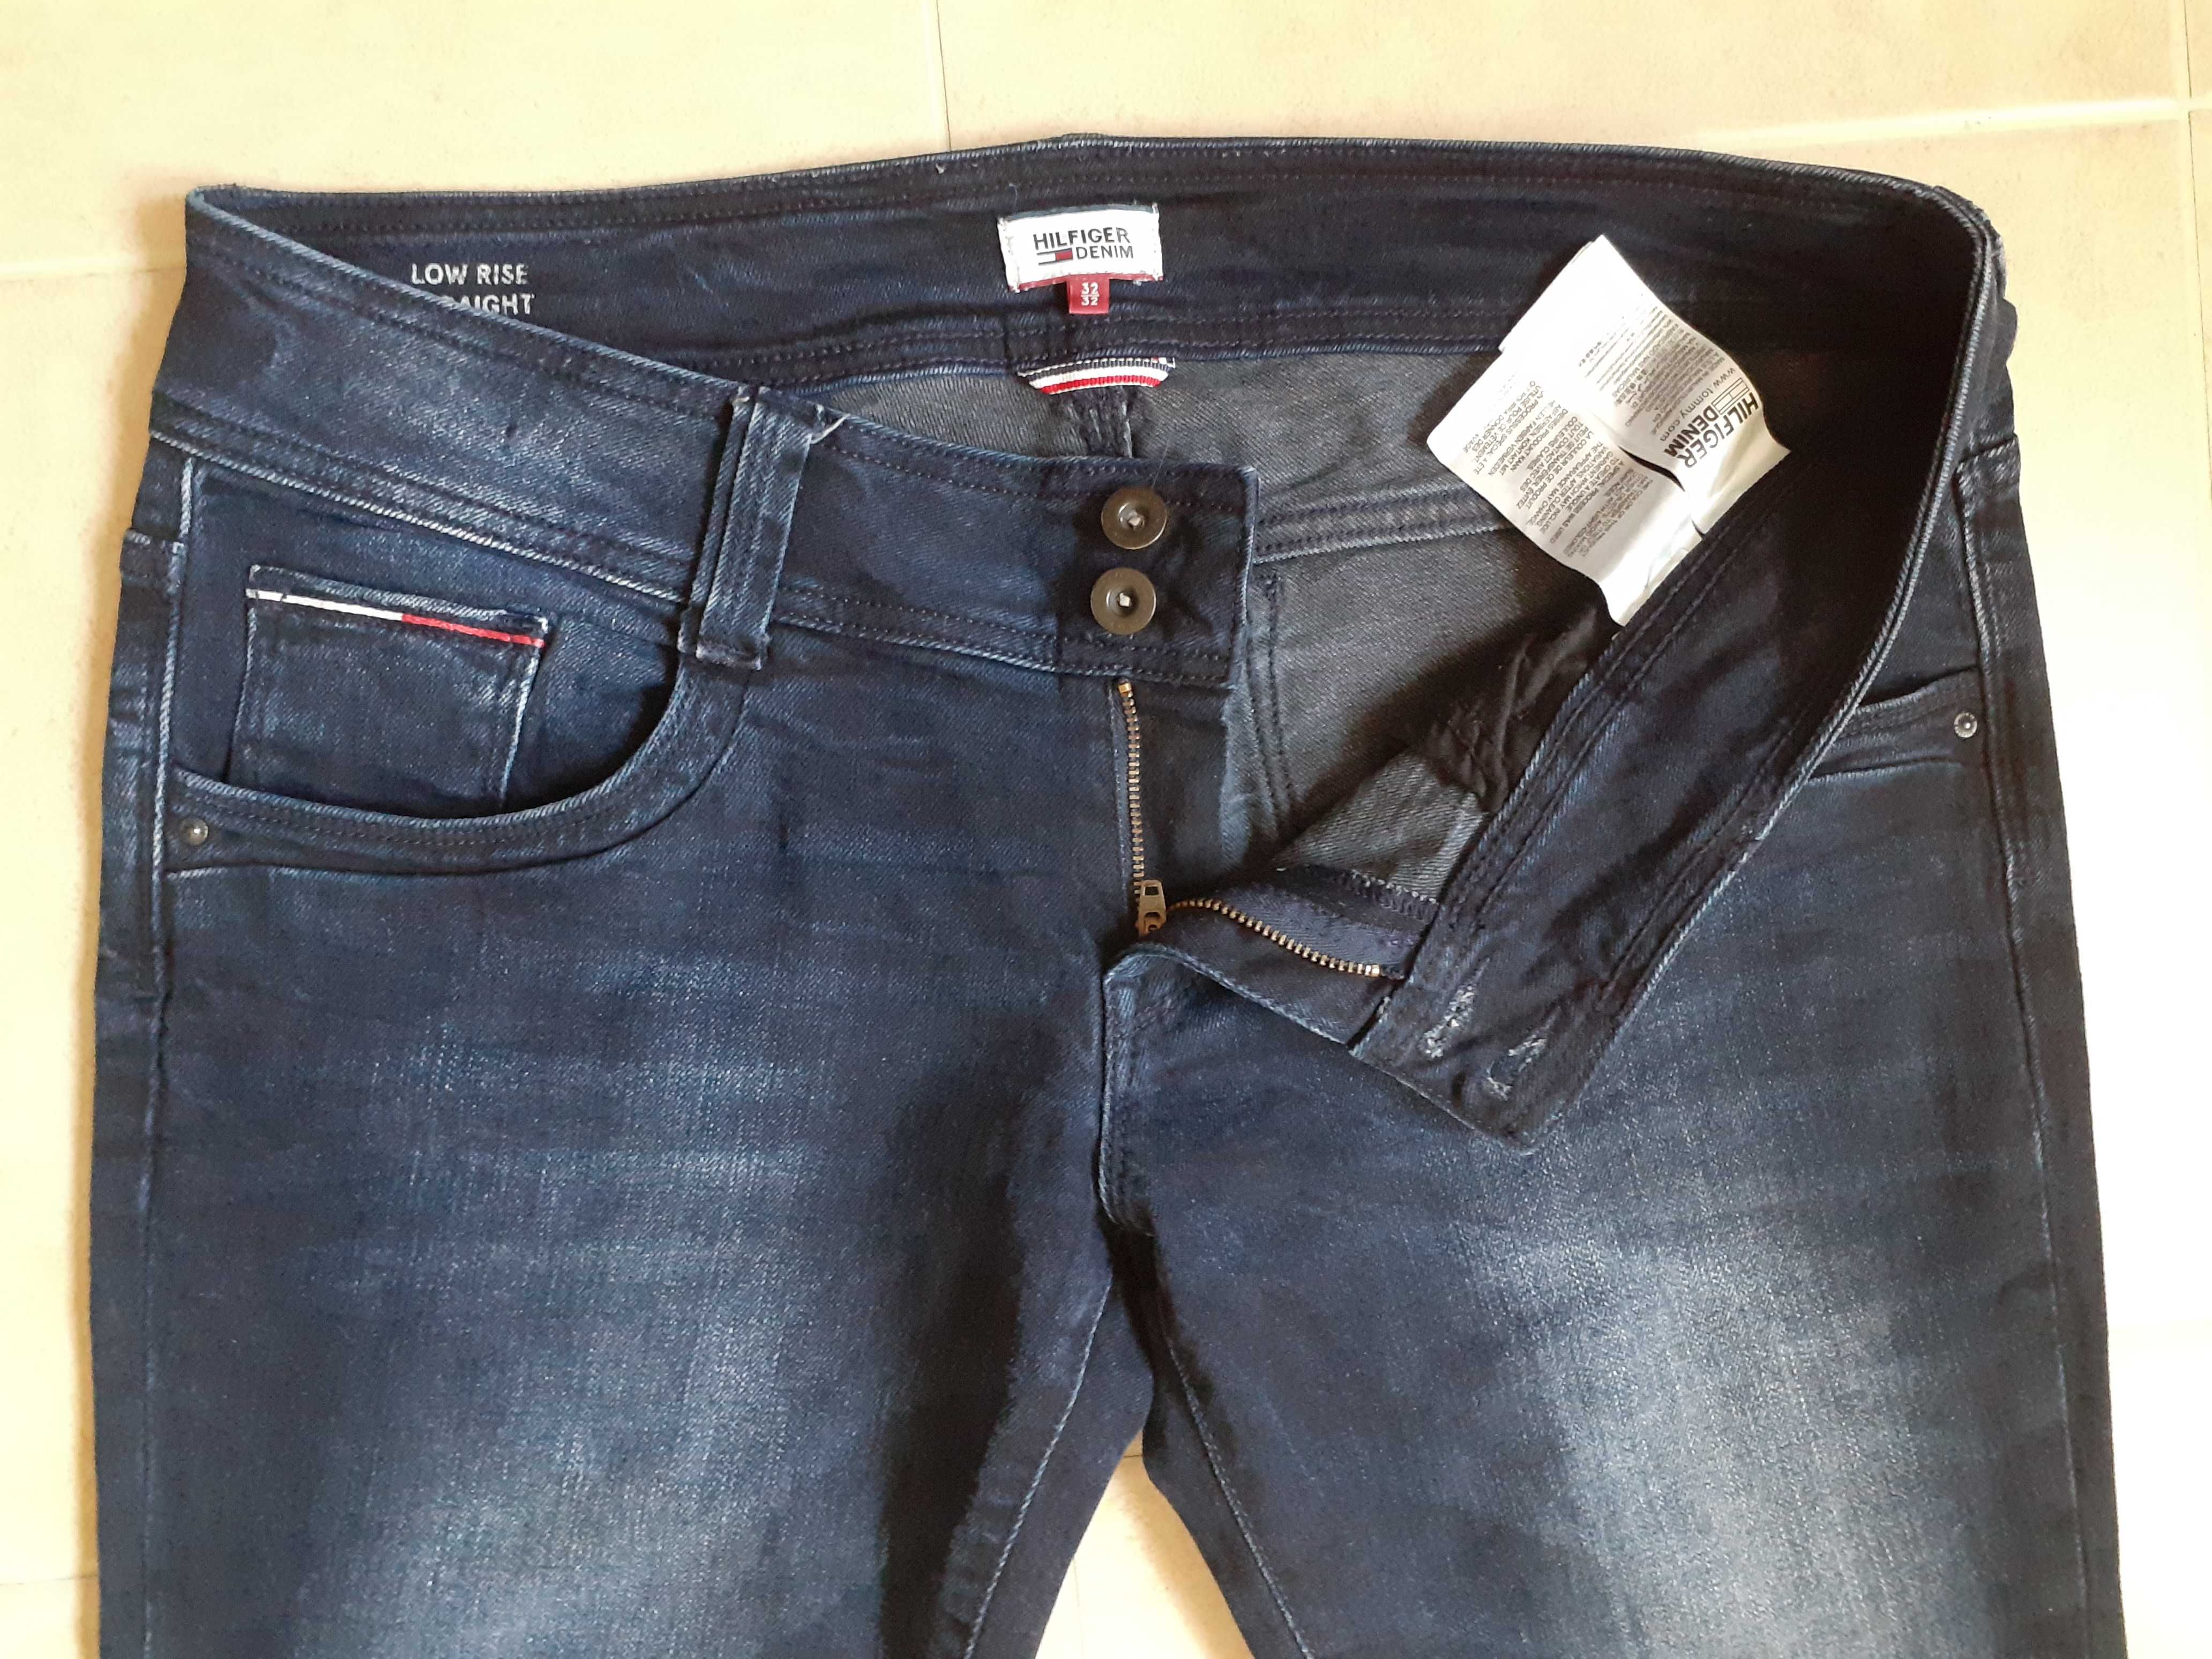 TOMMY HILFIGER Spodnie jeansowe jeansy damskie pas 92 94 W32 L32 42 Lublin  • OLX.pl